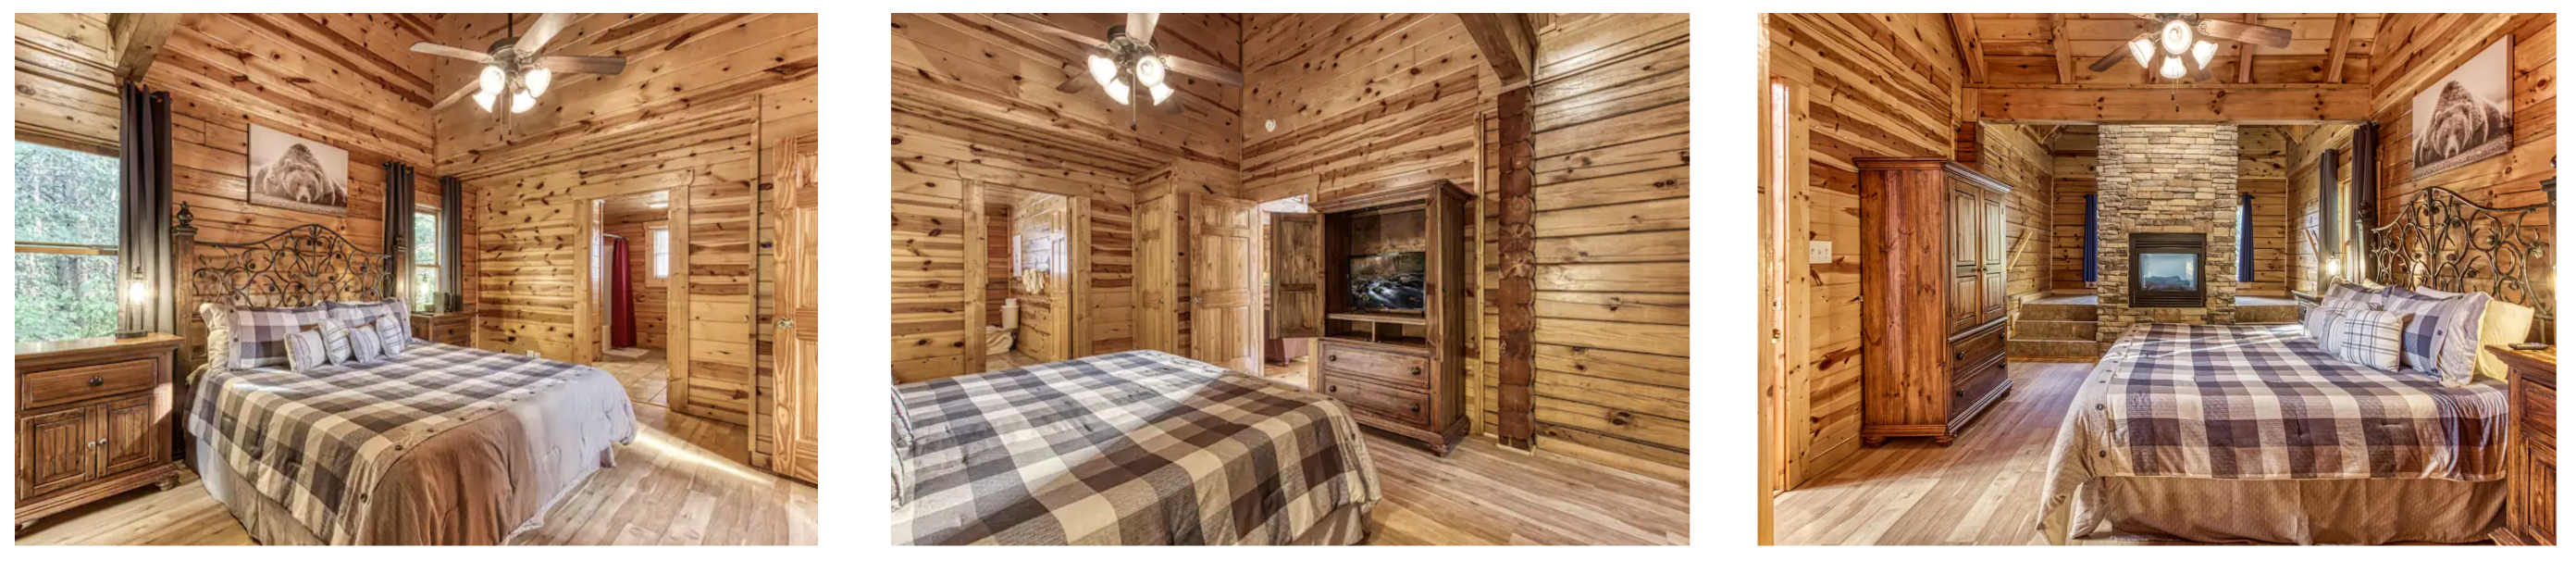 interior photo ideas for Smoky Mountain cabins